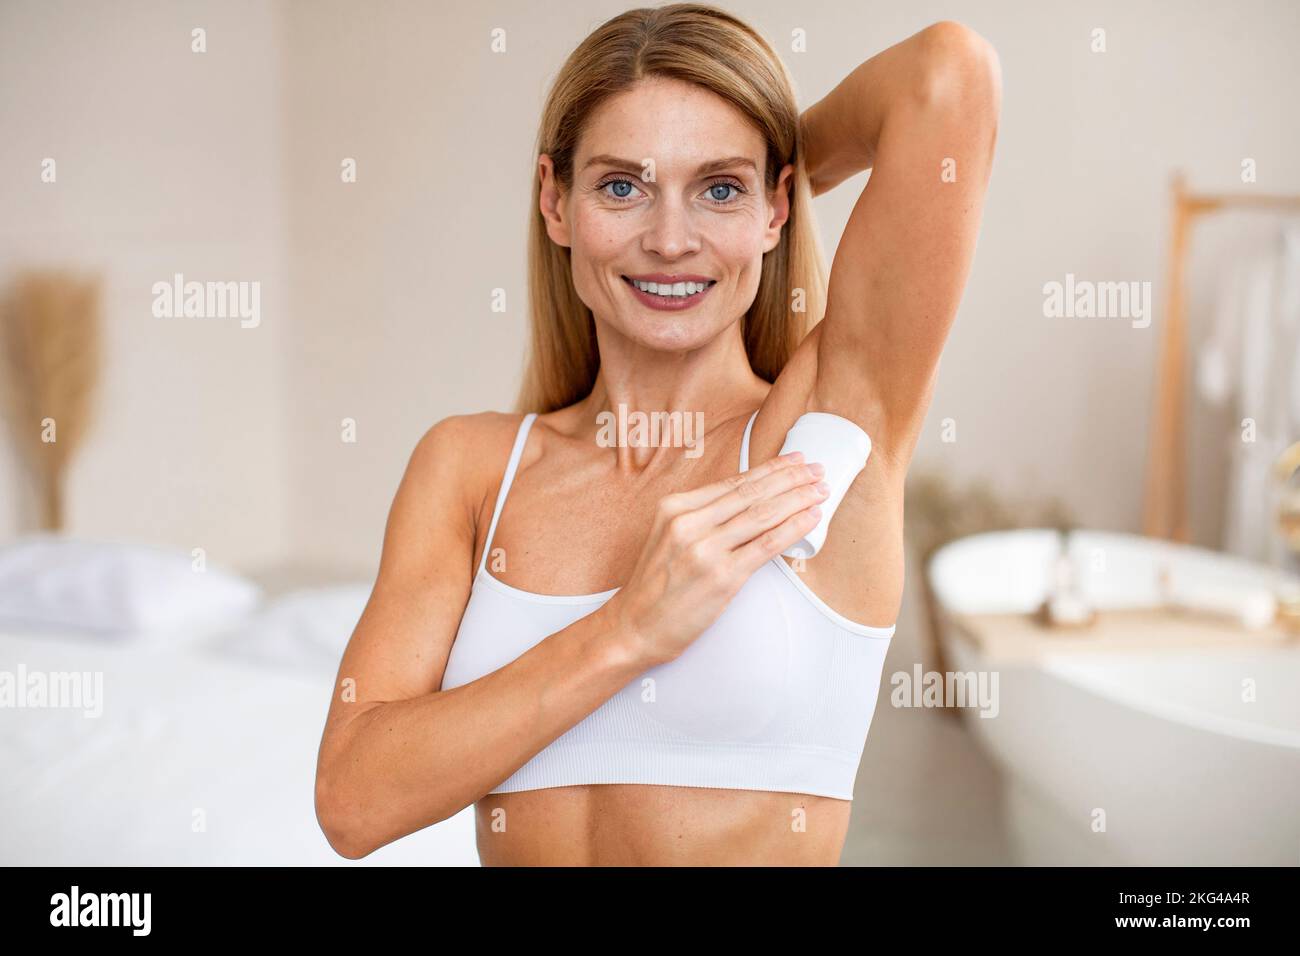 Ritratto di donna di mezza età positiva con bastone antitraspirante per ascelle, in piedi all'interno della stanza Foto Stock